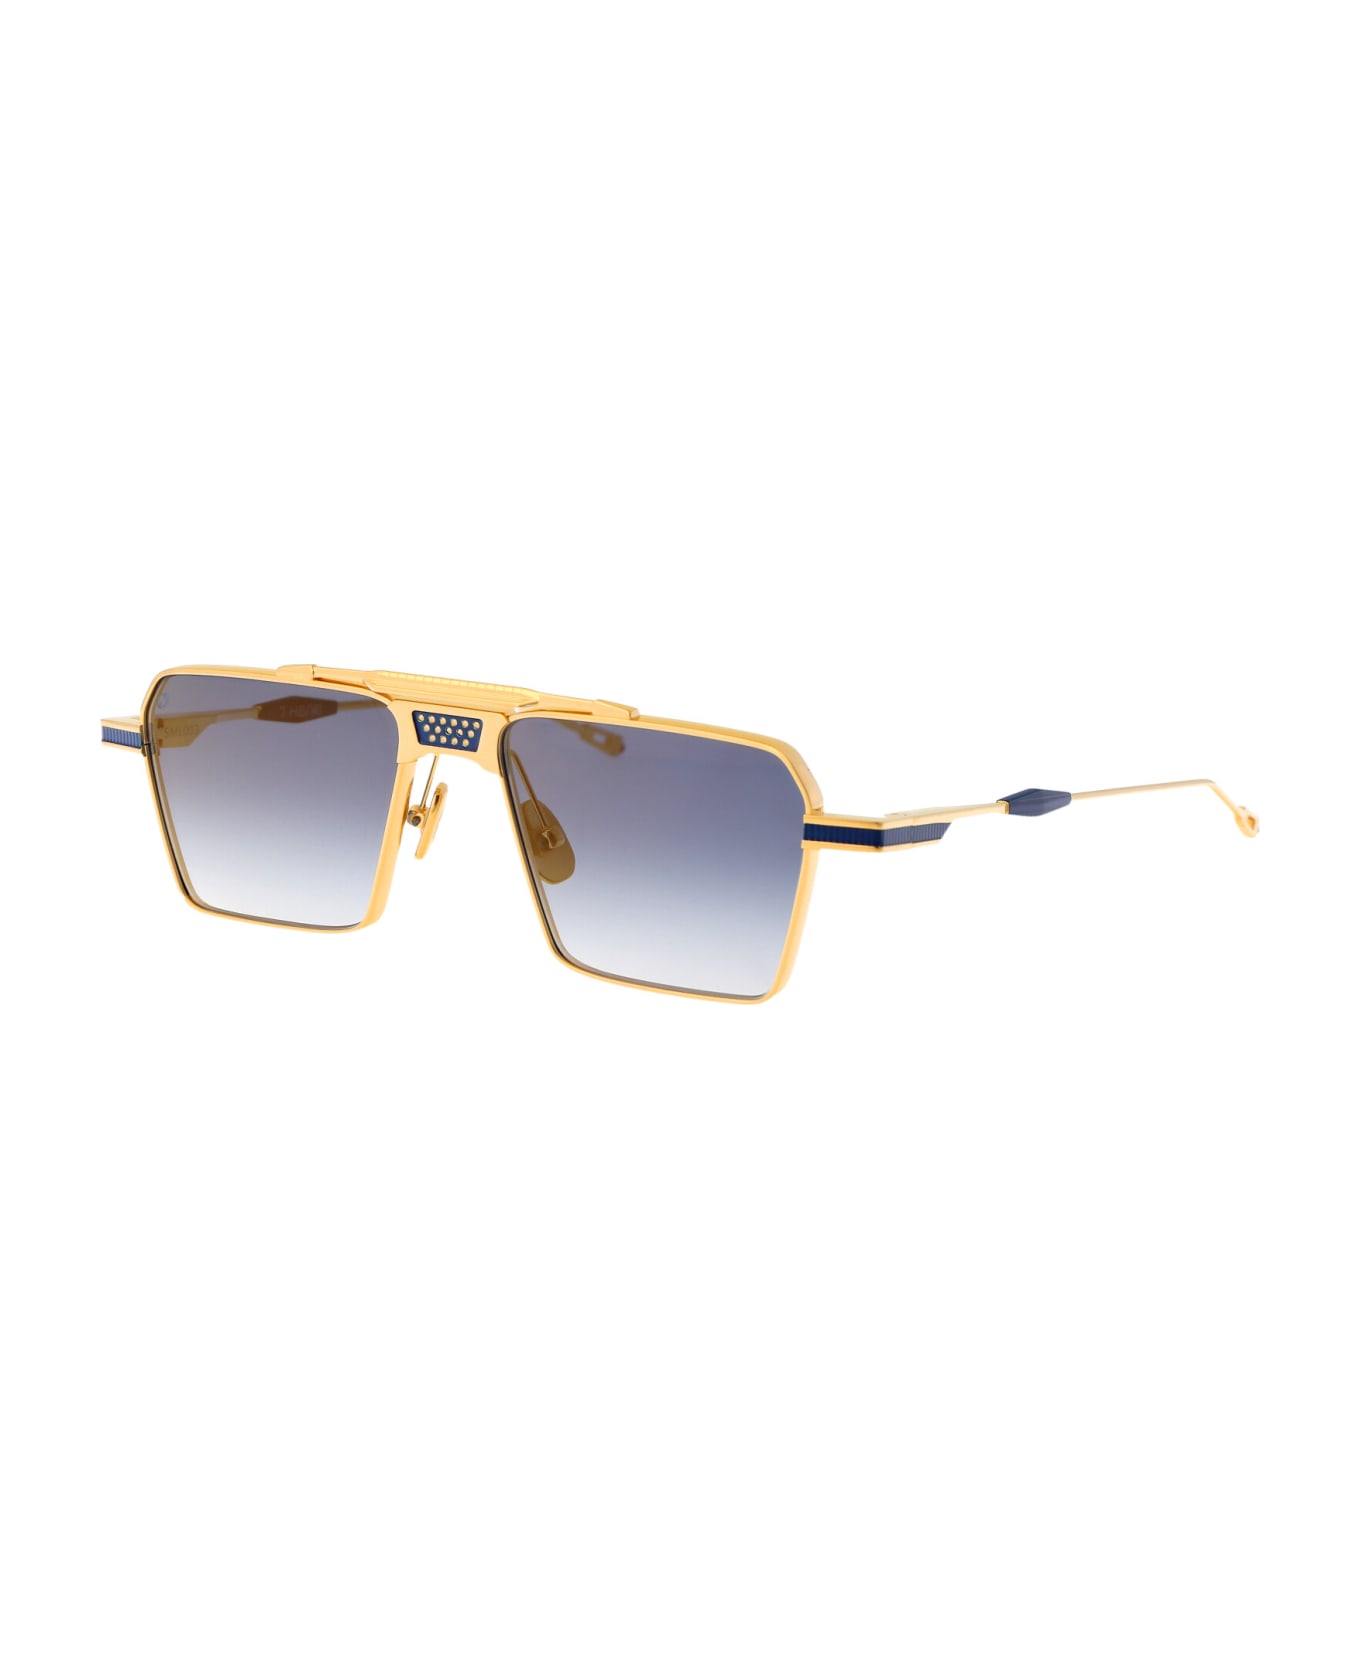 T Henri Scud Sunglasses - L'OR BLEU サングラス